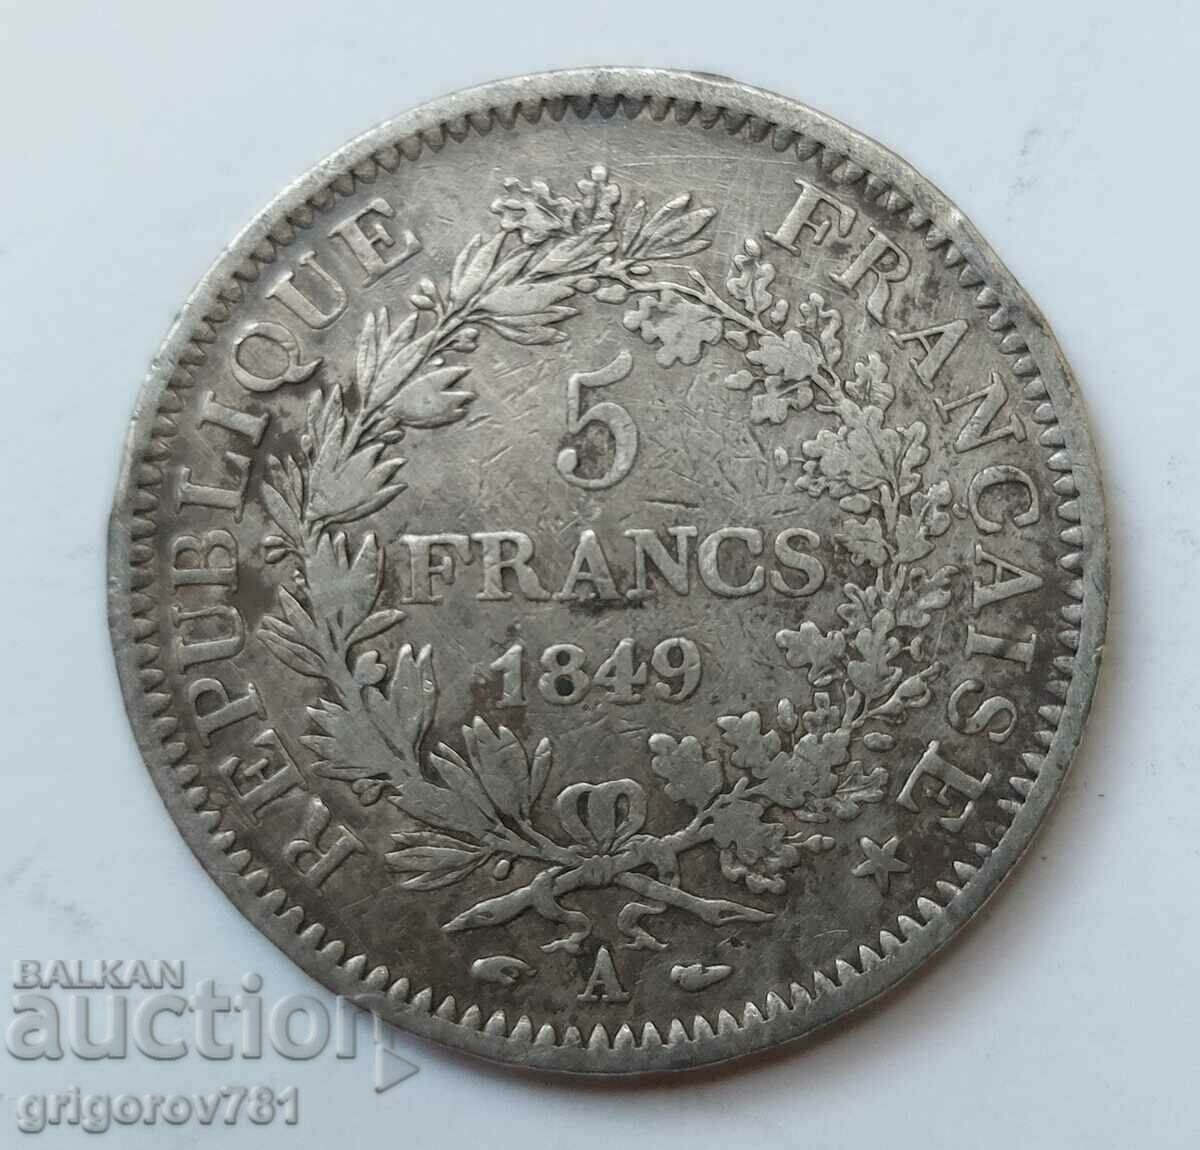 5 Franci Argint Franta 1849 A - Moneda de argint #78